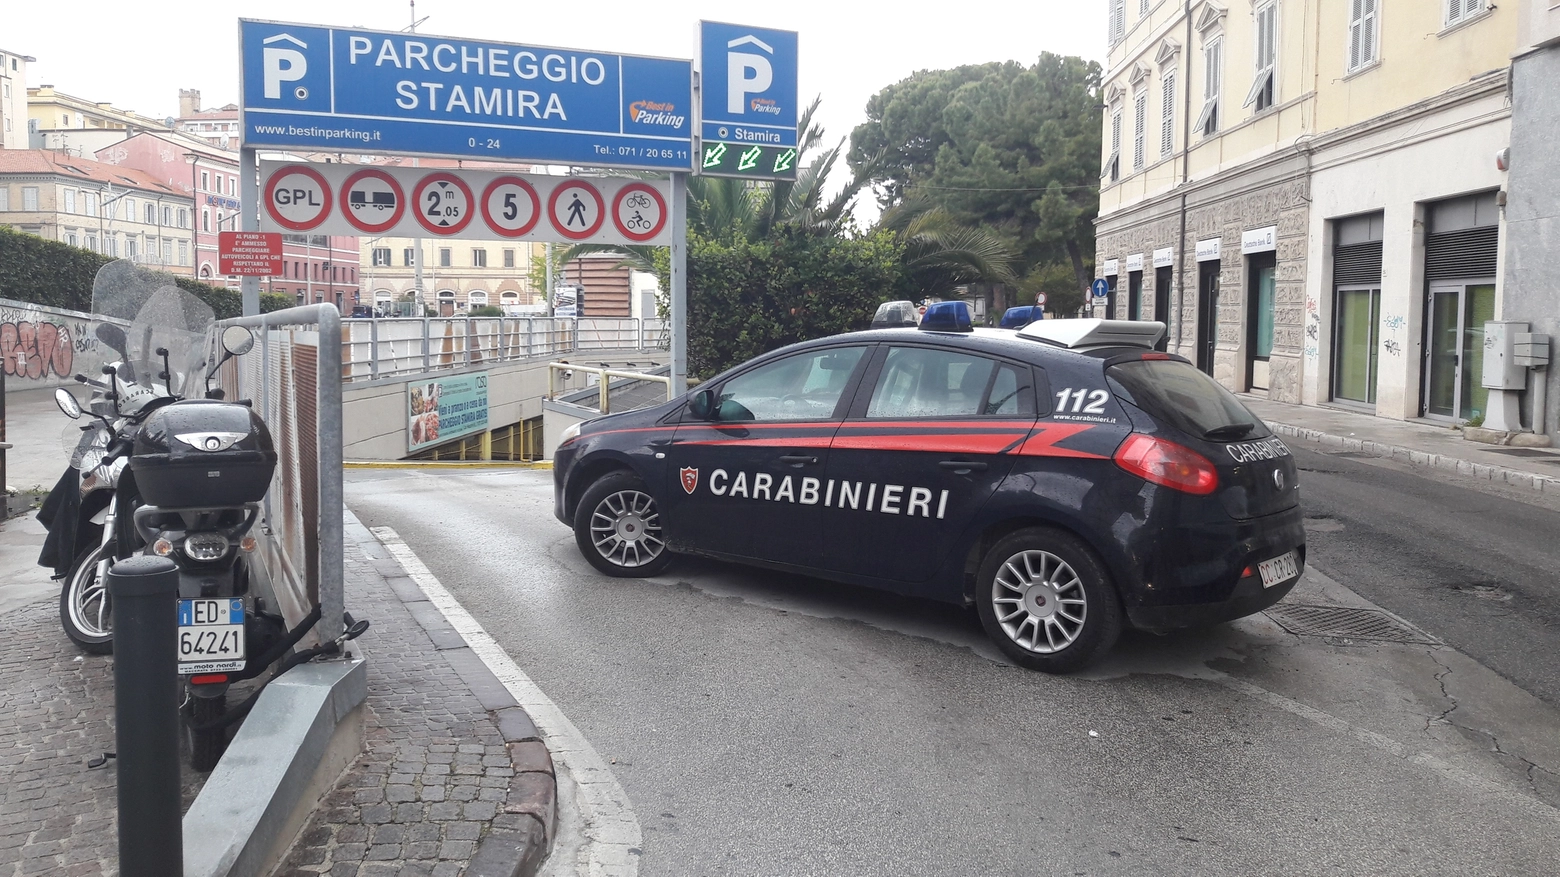 Ancona, allarme bomba al parcheggio Stamira